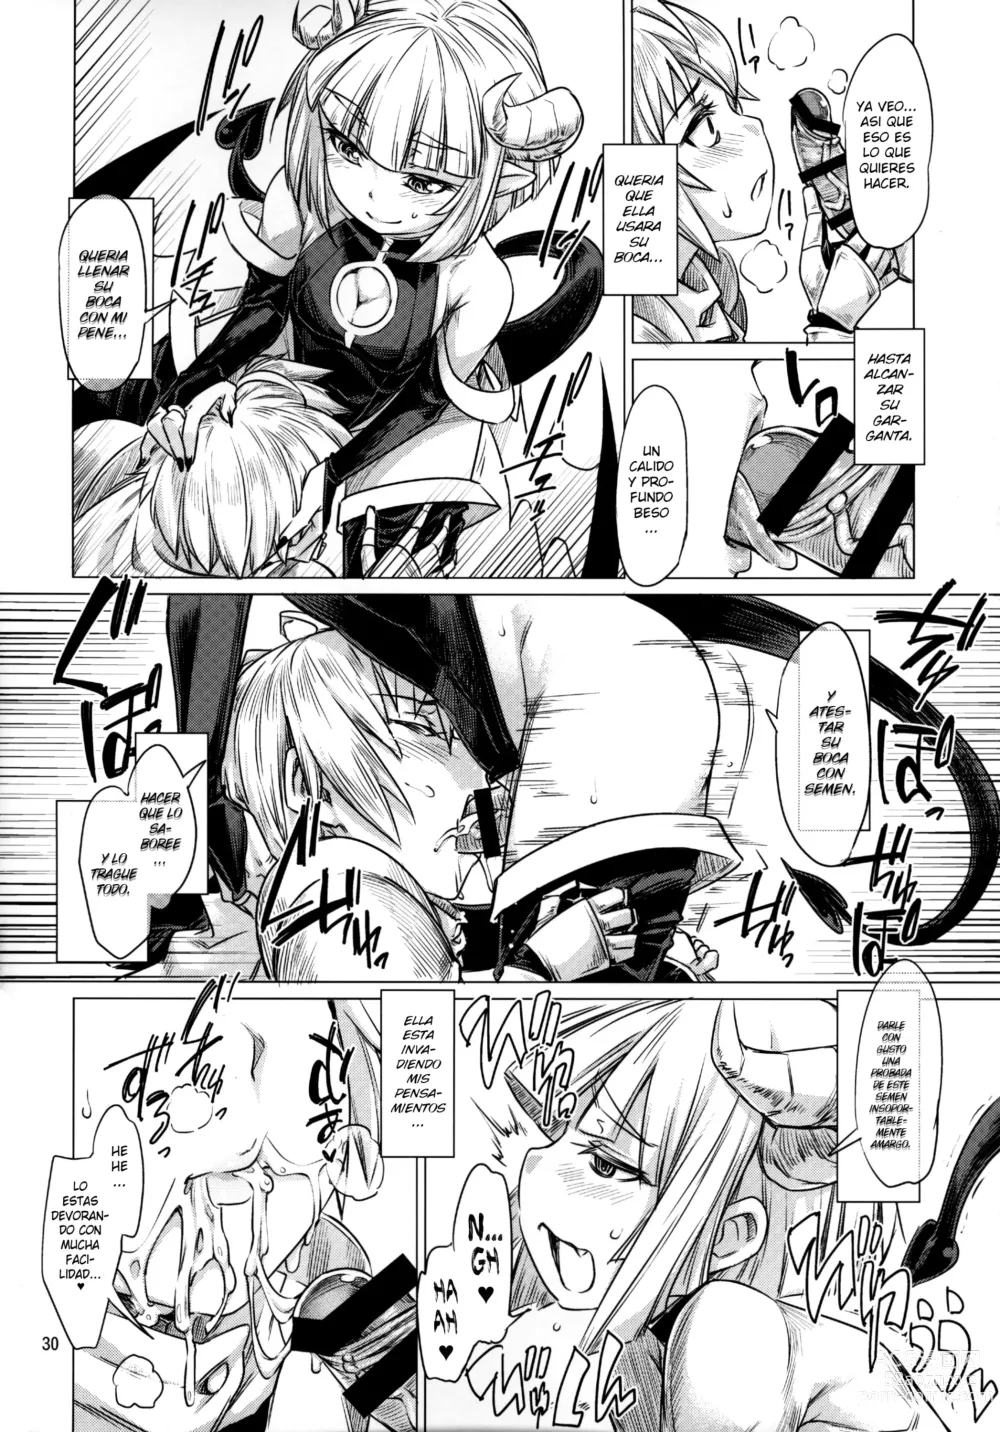 Page 4 of doujinshi Sucubo Agrediendo a Un Caballero con su Pene